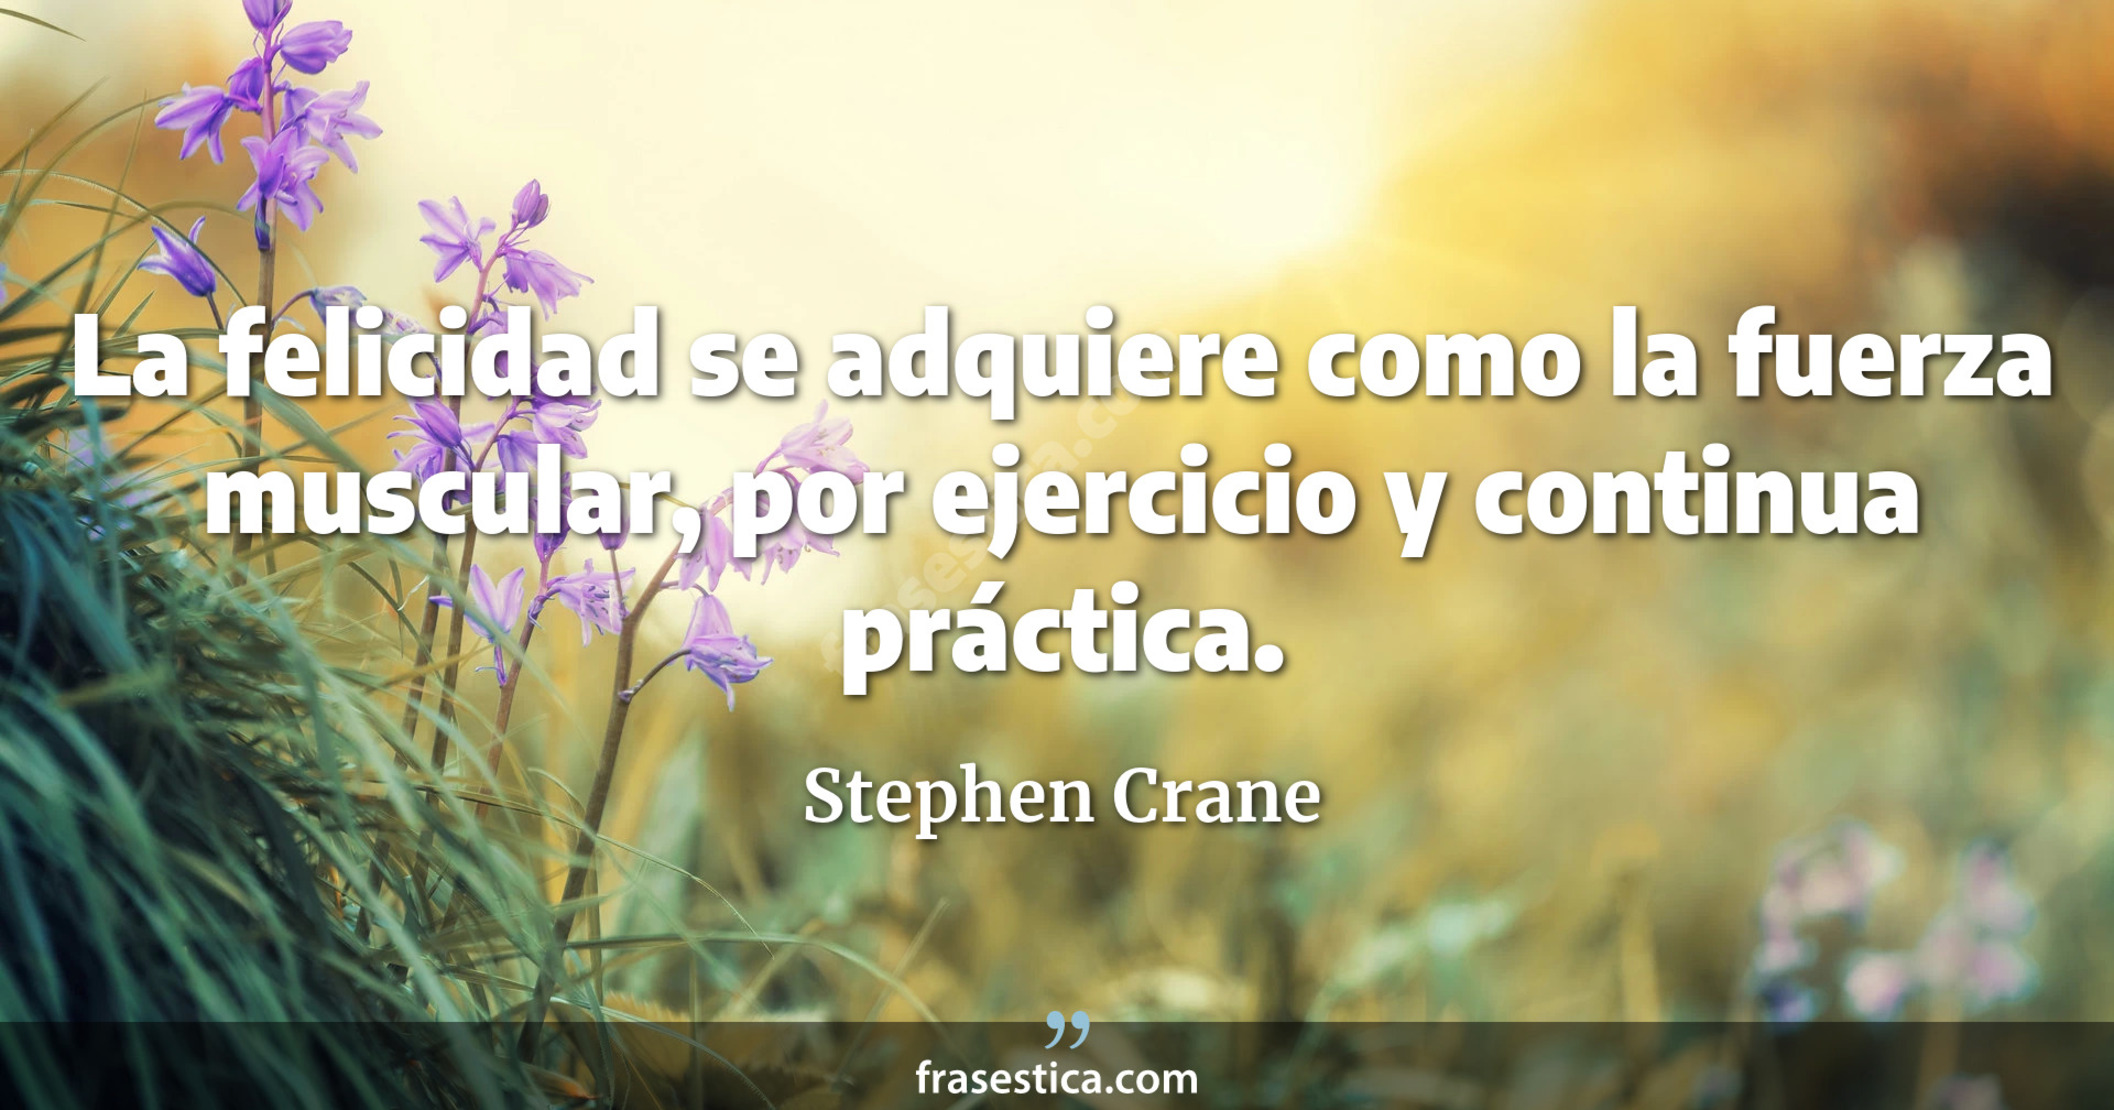 La felicidad se adquiere como la fuerza muscular, por ejercicio y continua práctica. - Stephen Crane